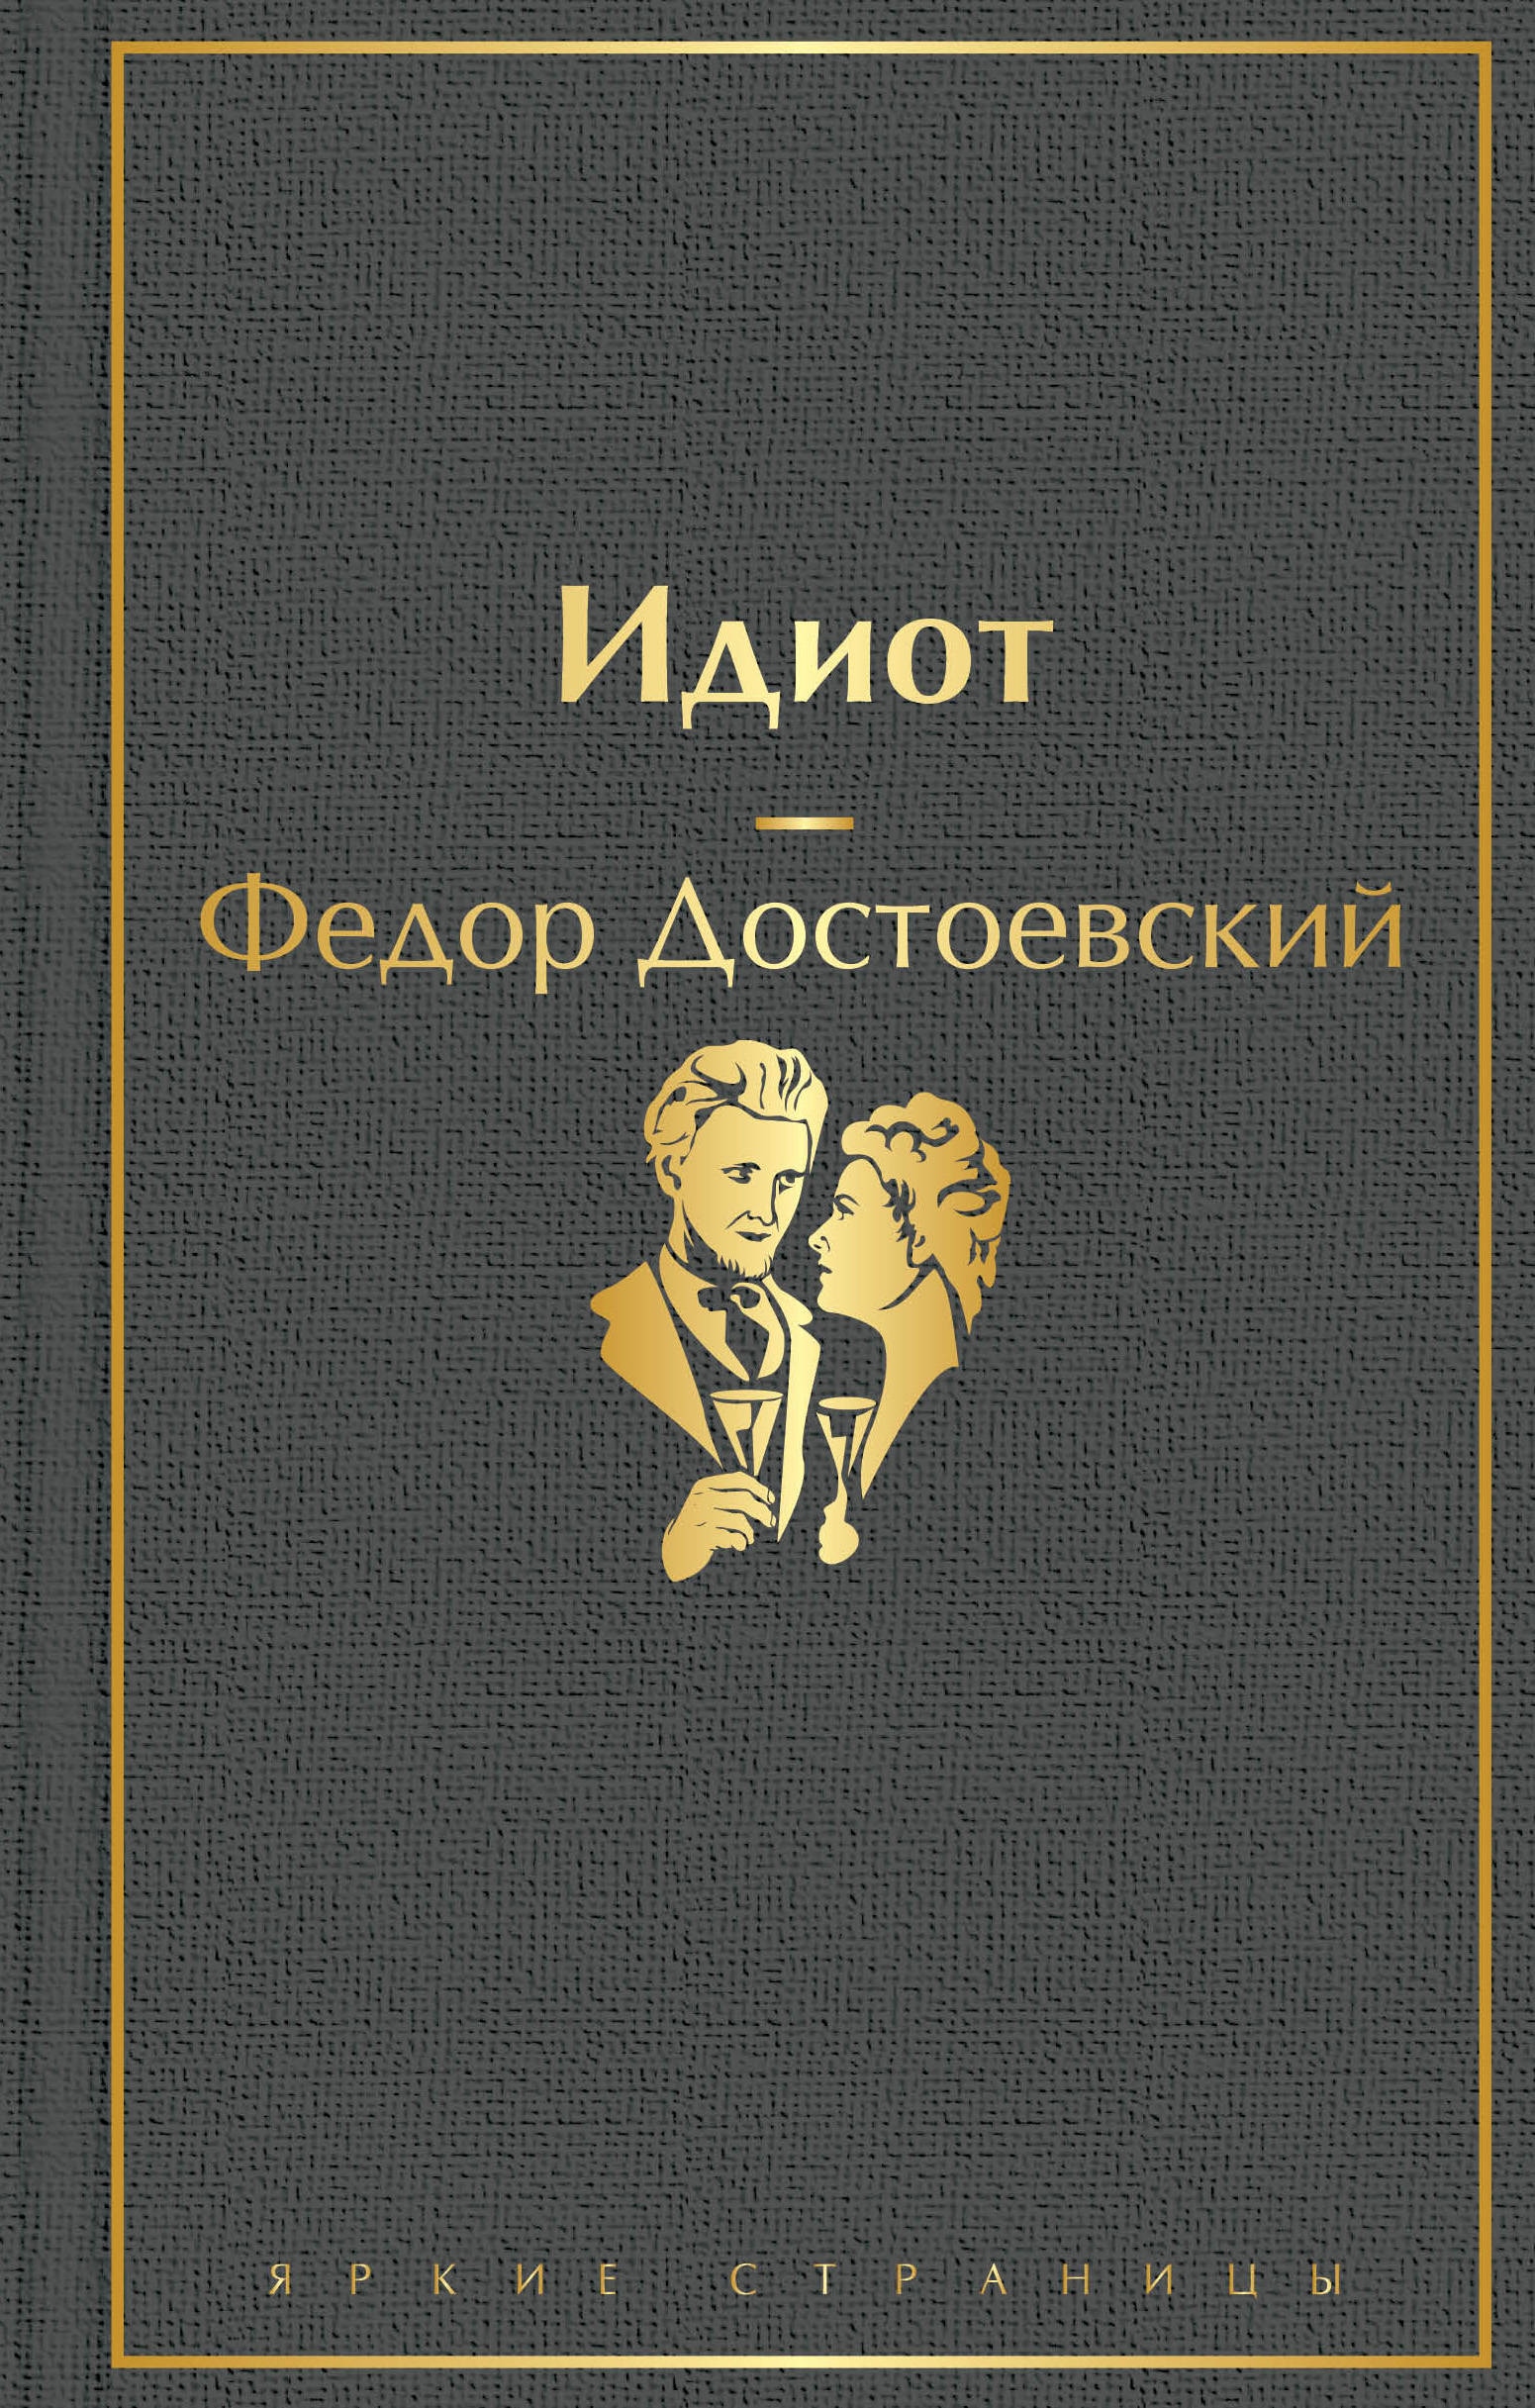 Книга «Идиот» Федор Достоевский — 28 апреля 2021 г.